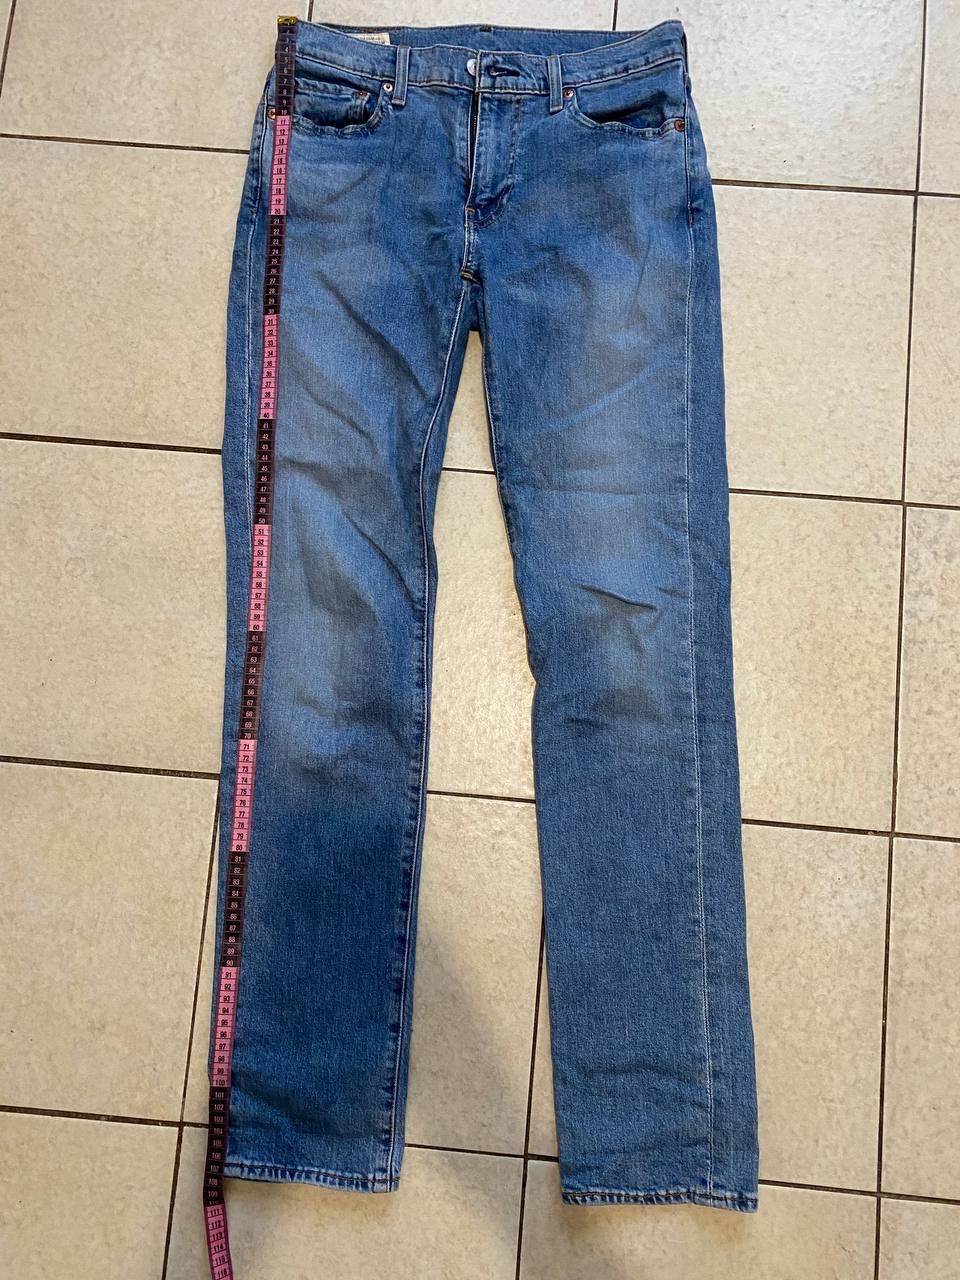 Оригінальні джинси Levis 511 W30 L34 у новому стані